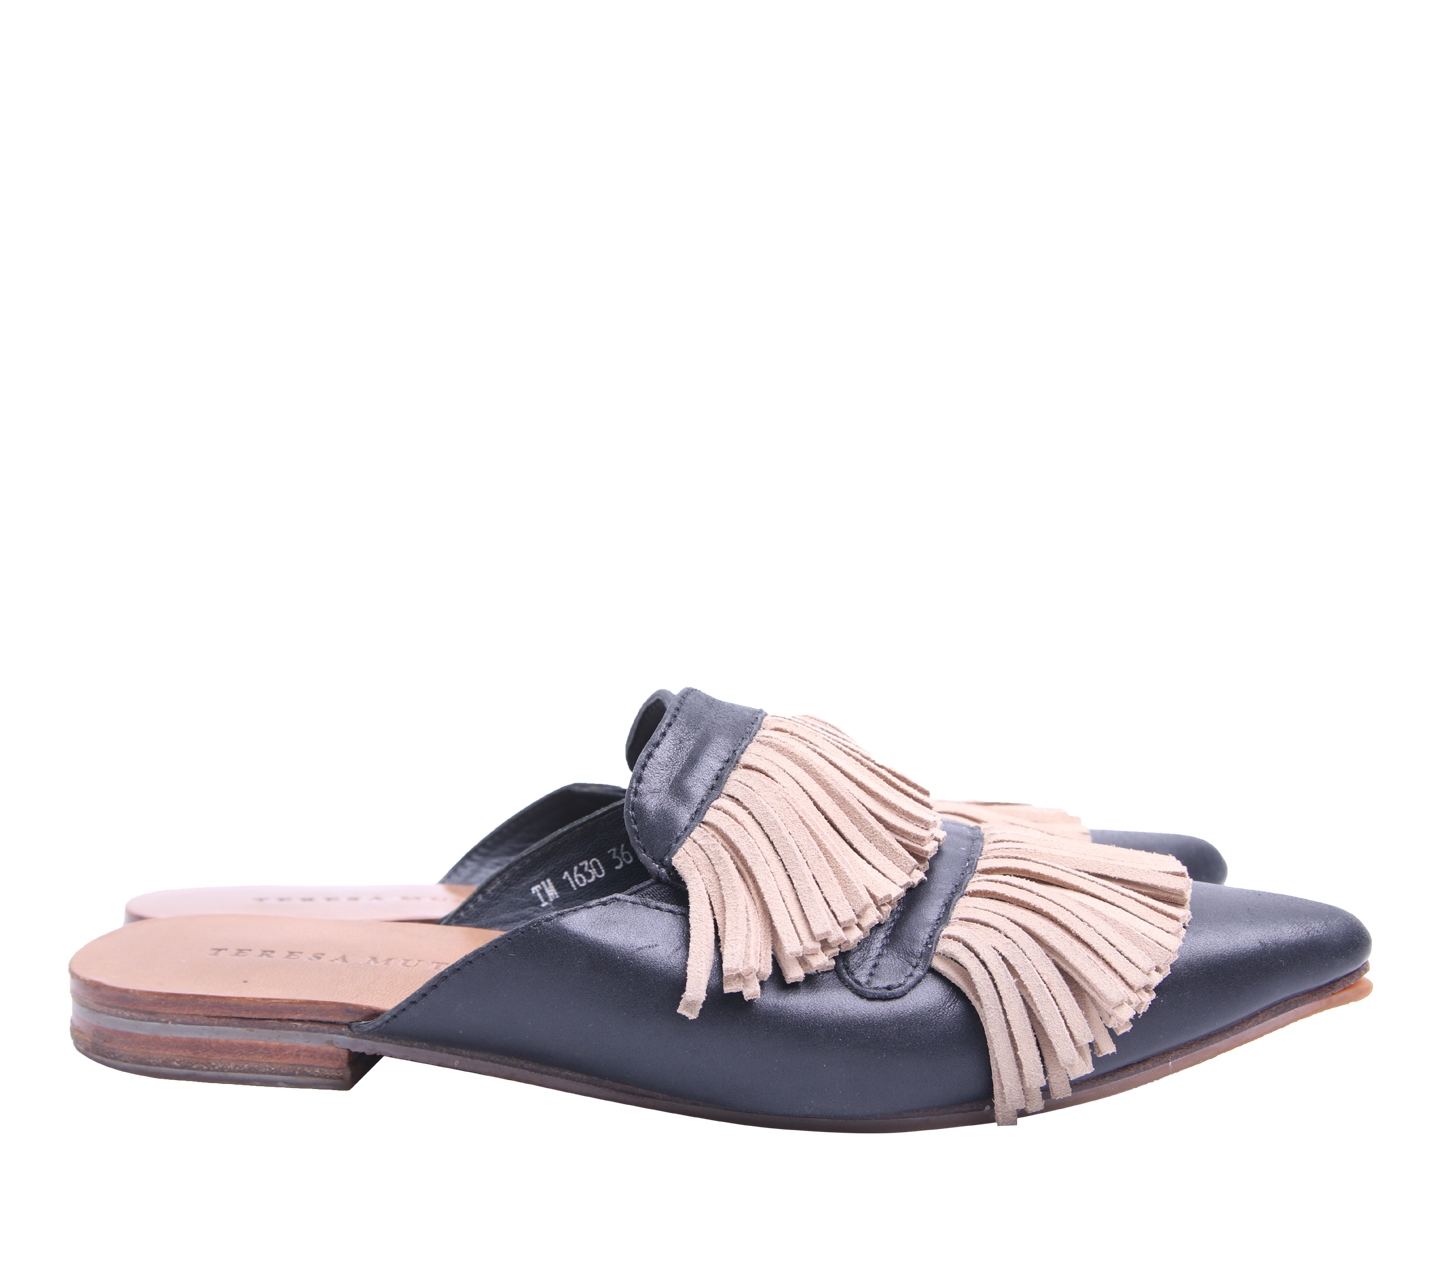 Teresa Mutiara Black Fringe Sandals